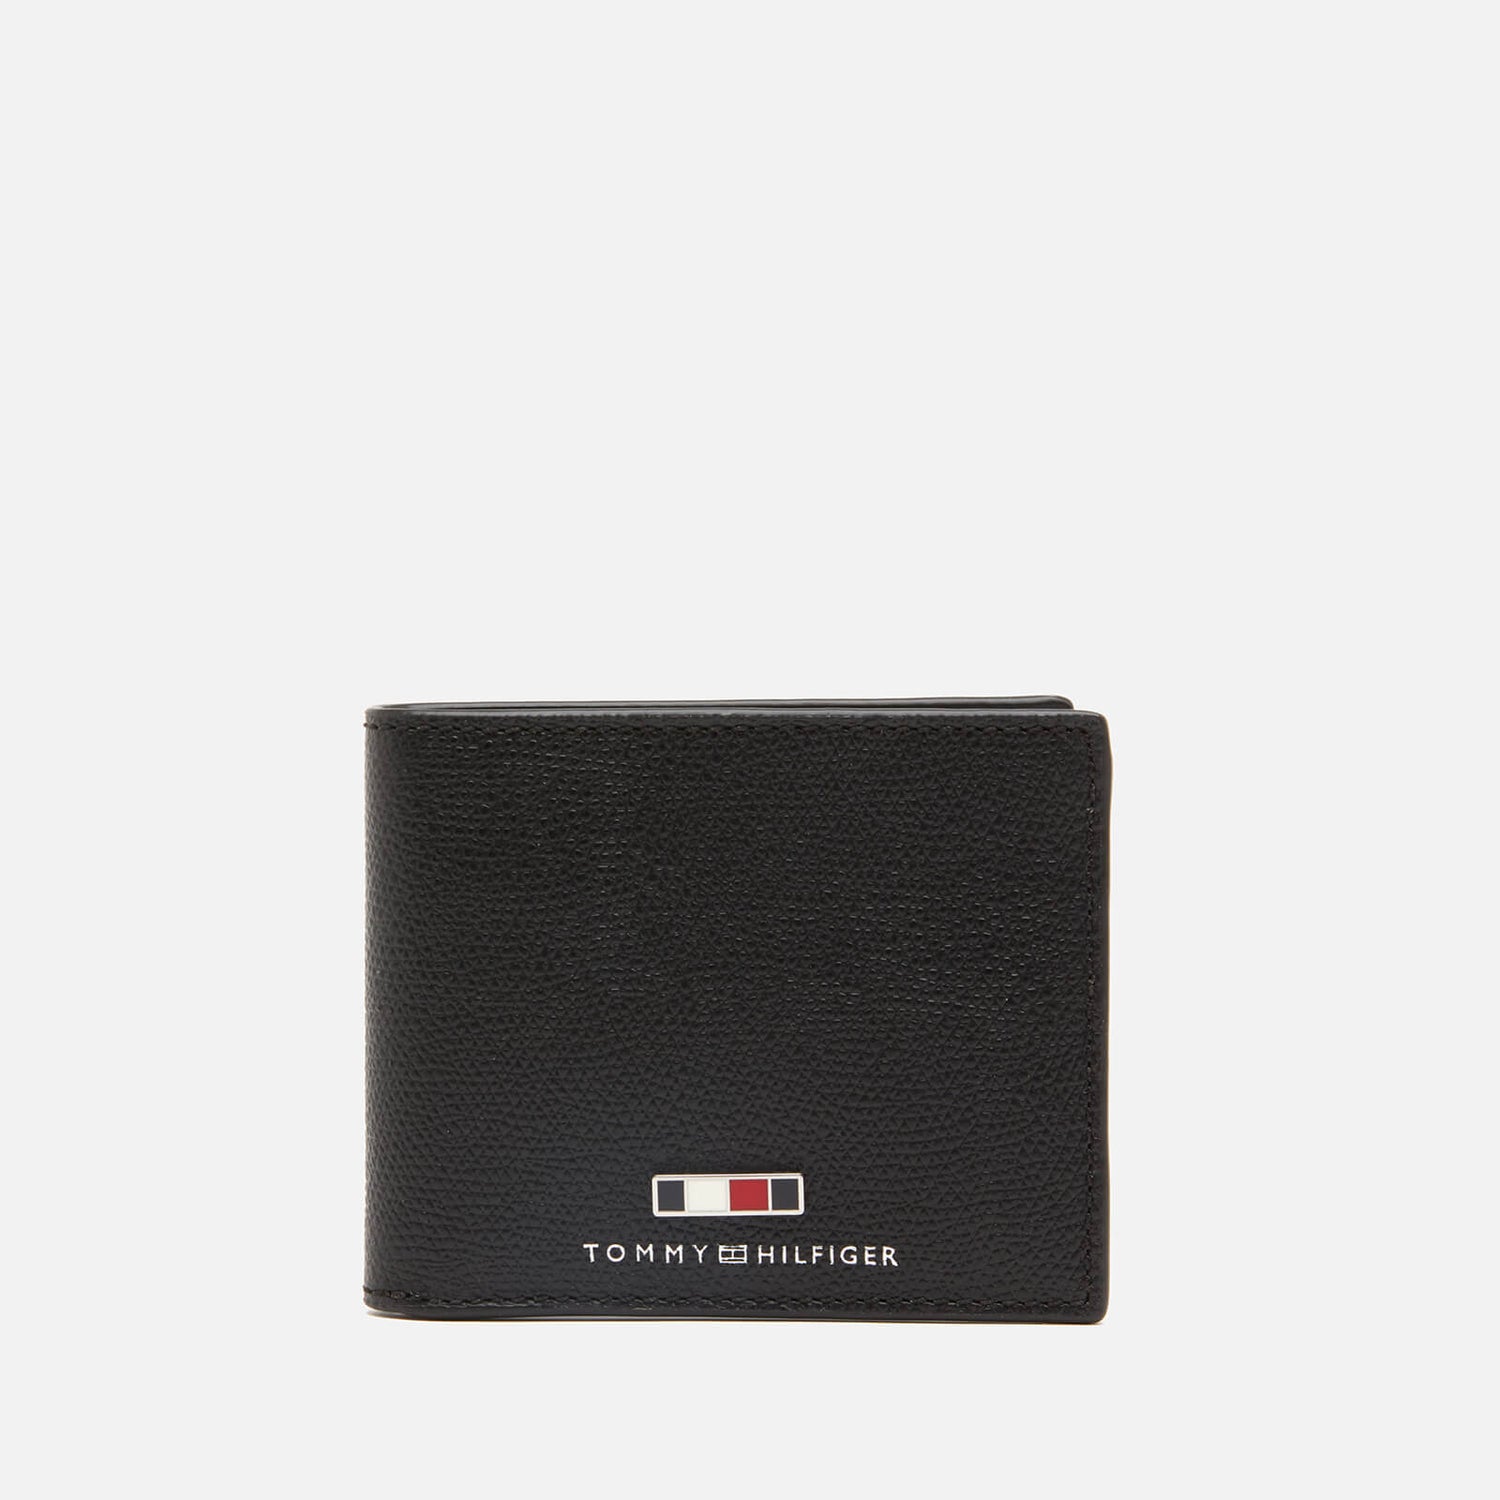 Tommy Hilfiger Men's Business Credit Card Wallet - Black